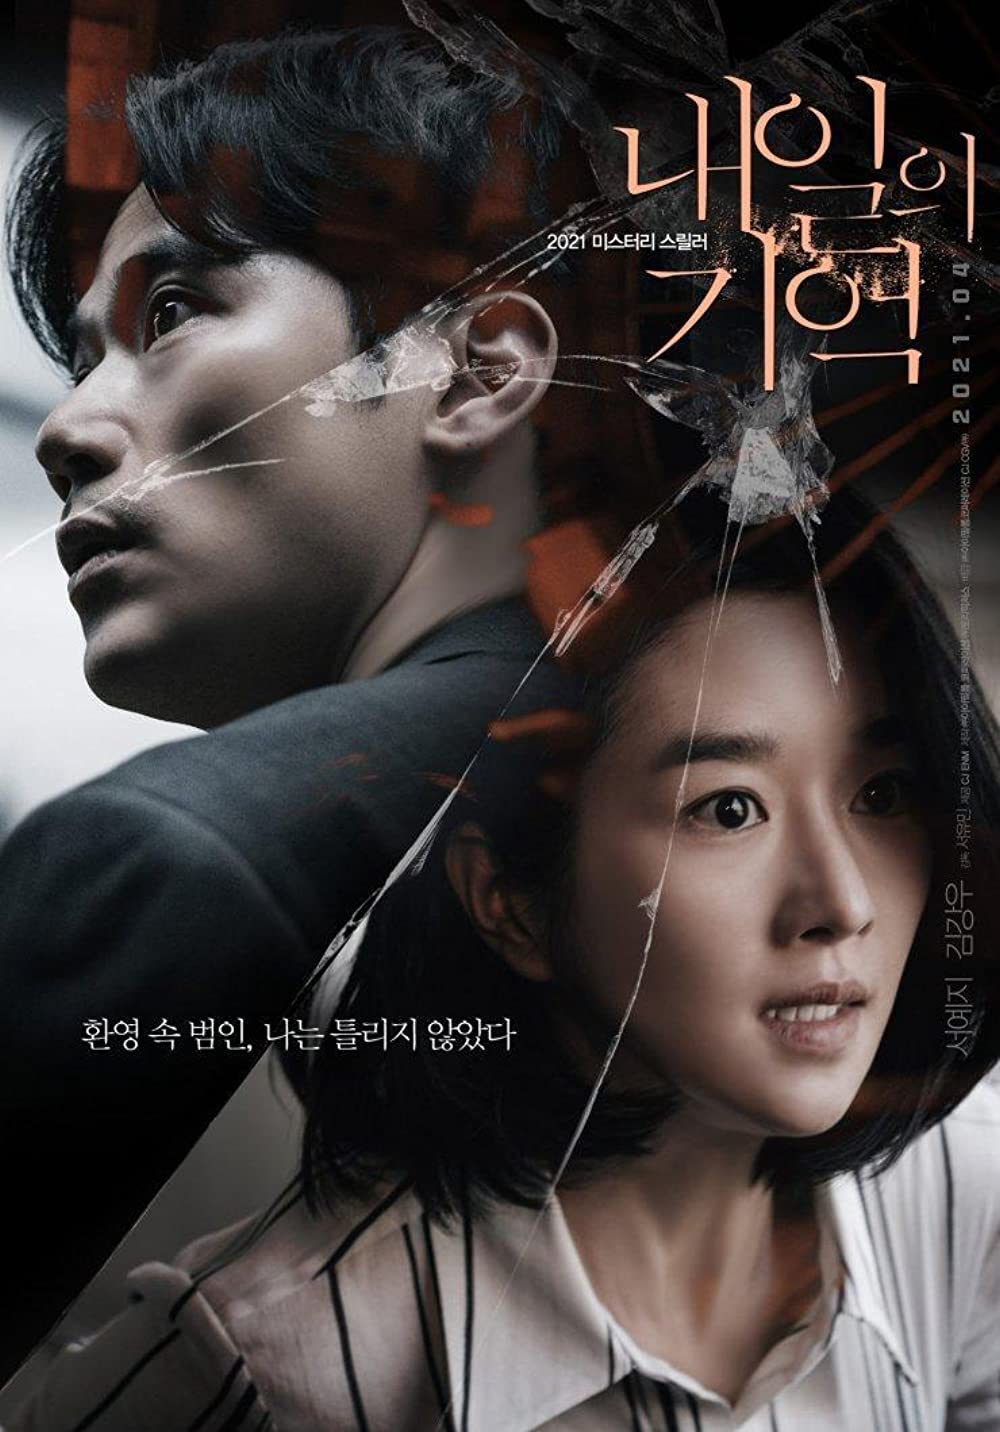 9 Film drama korea terbaik 2021, mulai kisah romantis hingga aksi